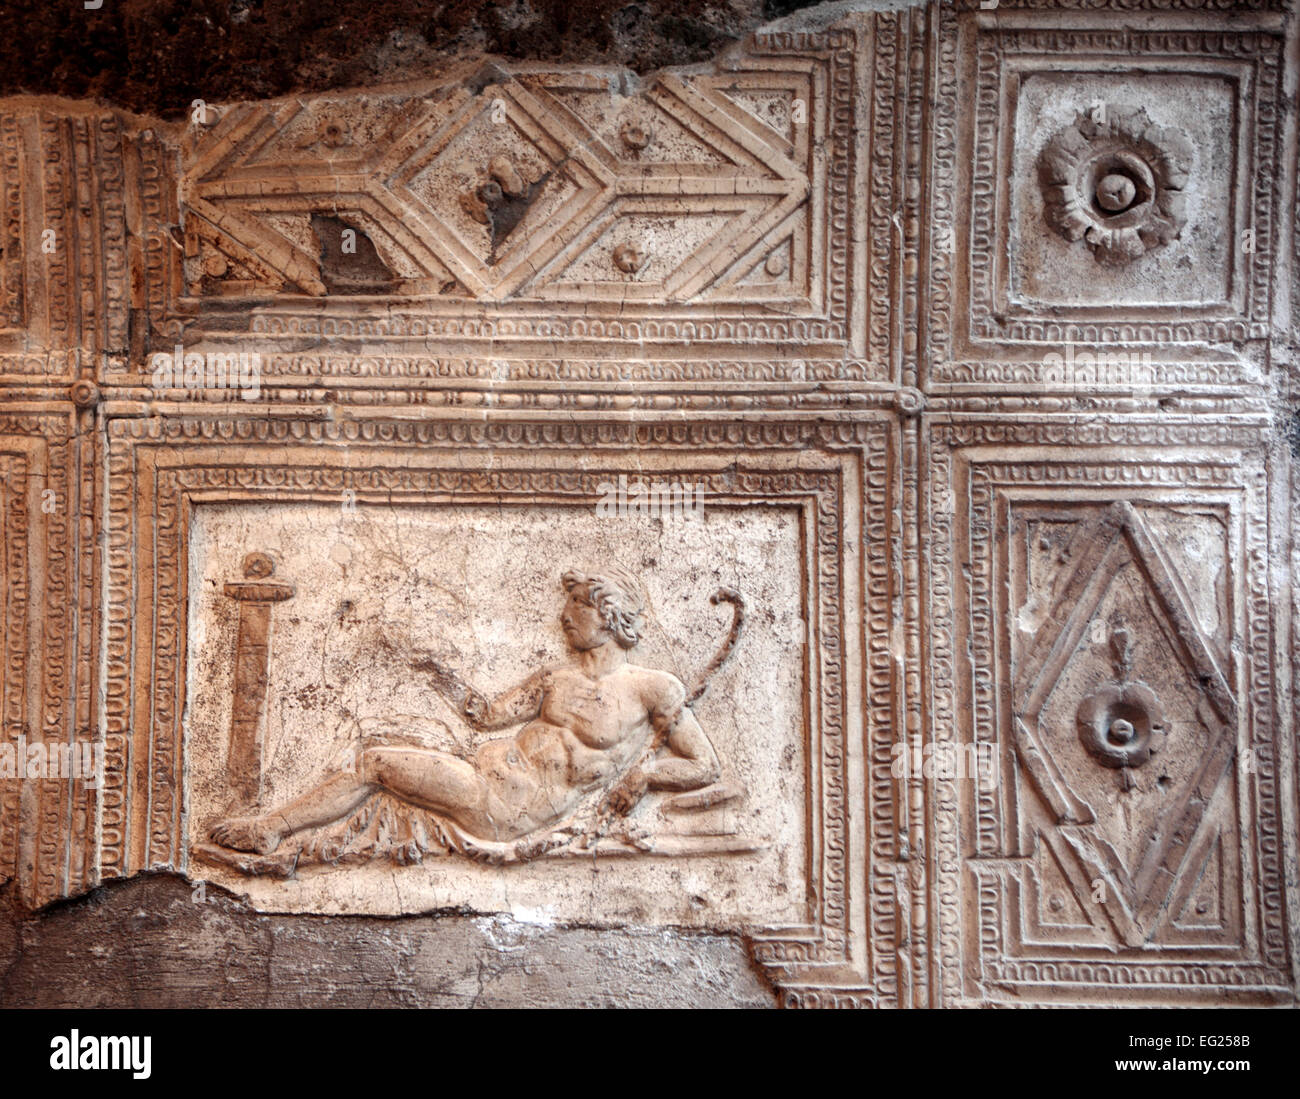 Arco cuadrifronte, stucco relief, Herculaneum, Ercolano, Campania, Italy Stock Photo